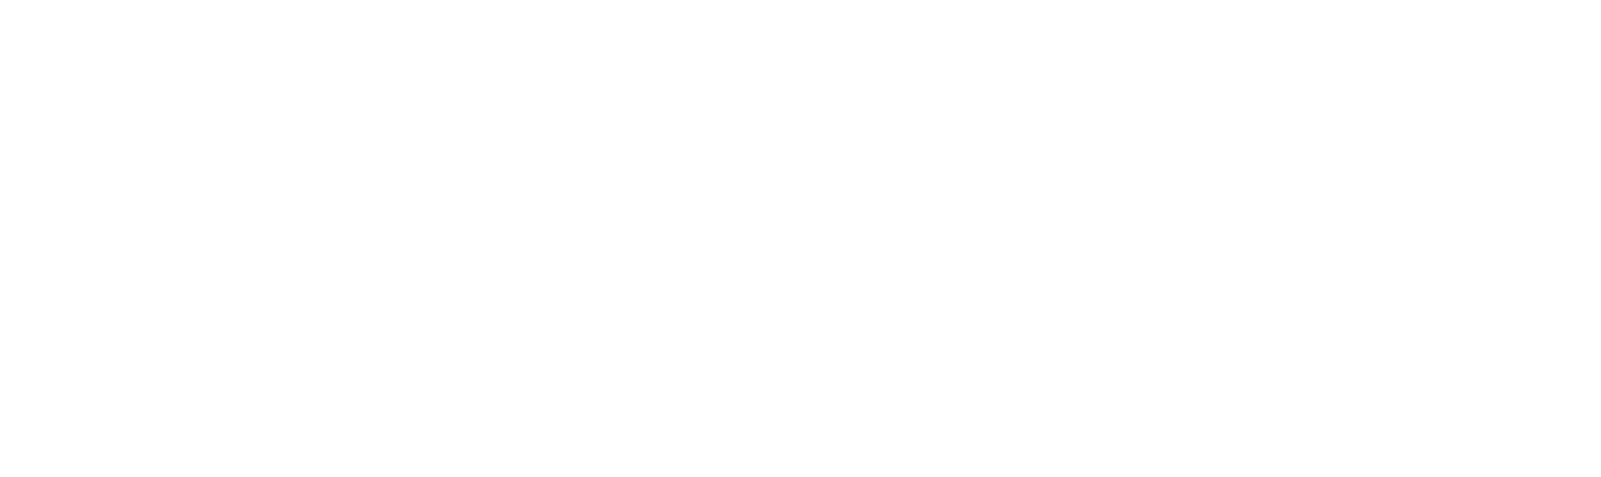 Britvic logo large for dark backgrounds (transparent PNG)